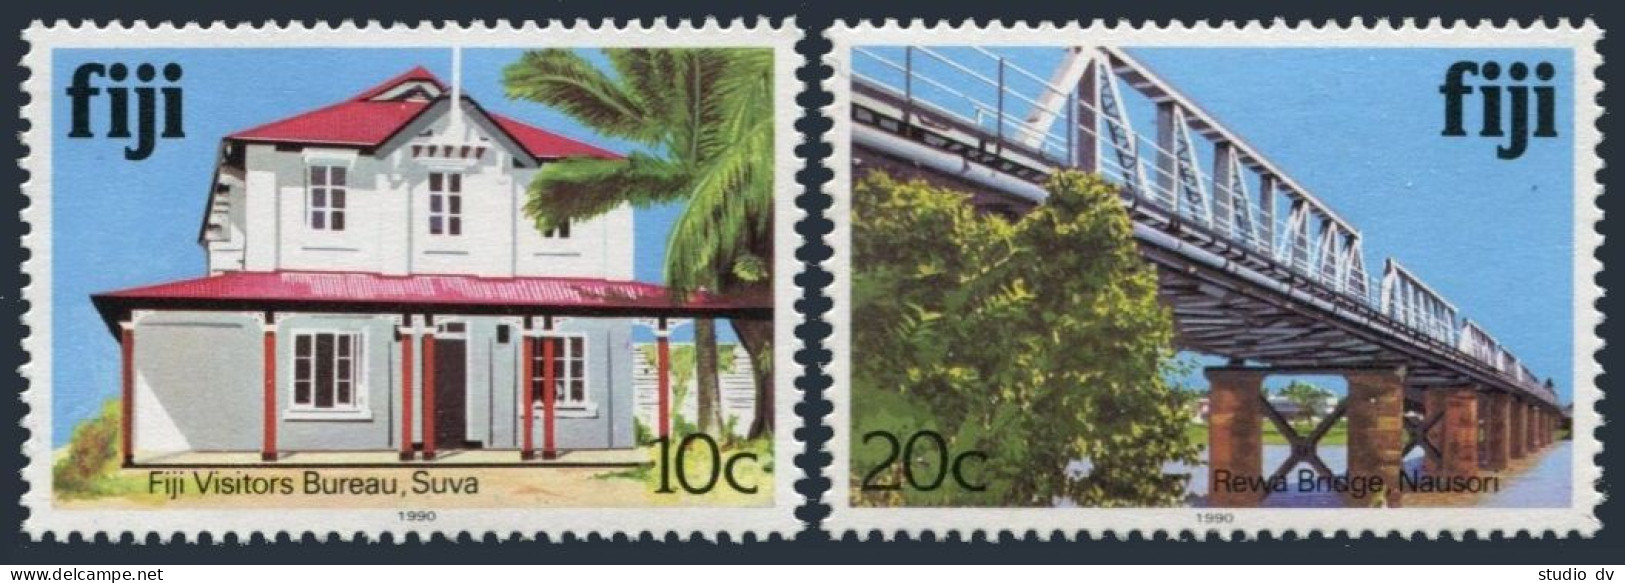 Fiji 414i,418i,MNH. 1990.Visitors' Bureau,Rewa Bridge. - Fiji (1970-...)